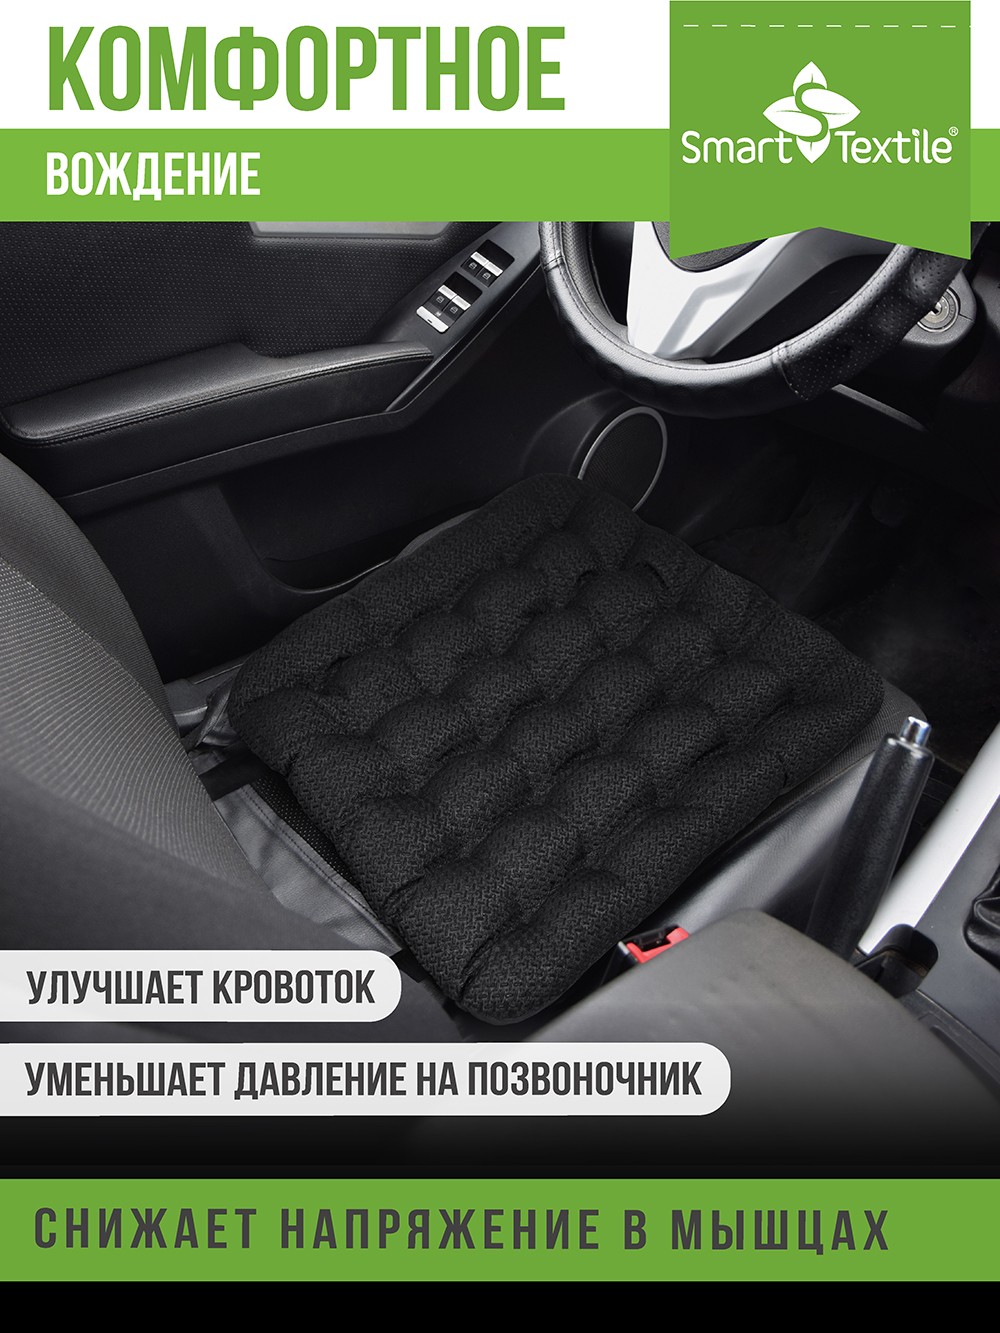 Автомобильная подушка Smart Textile 